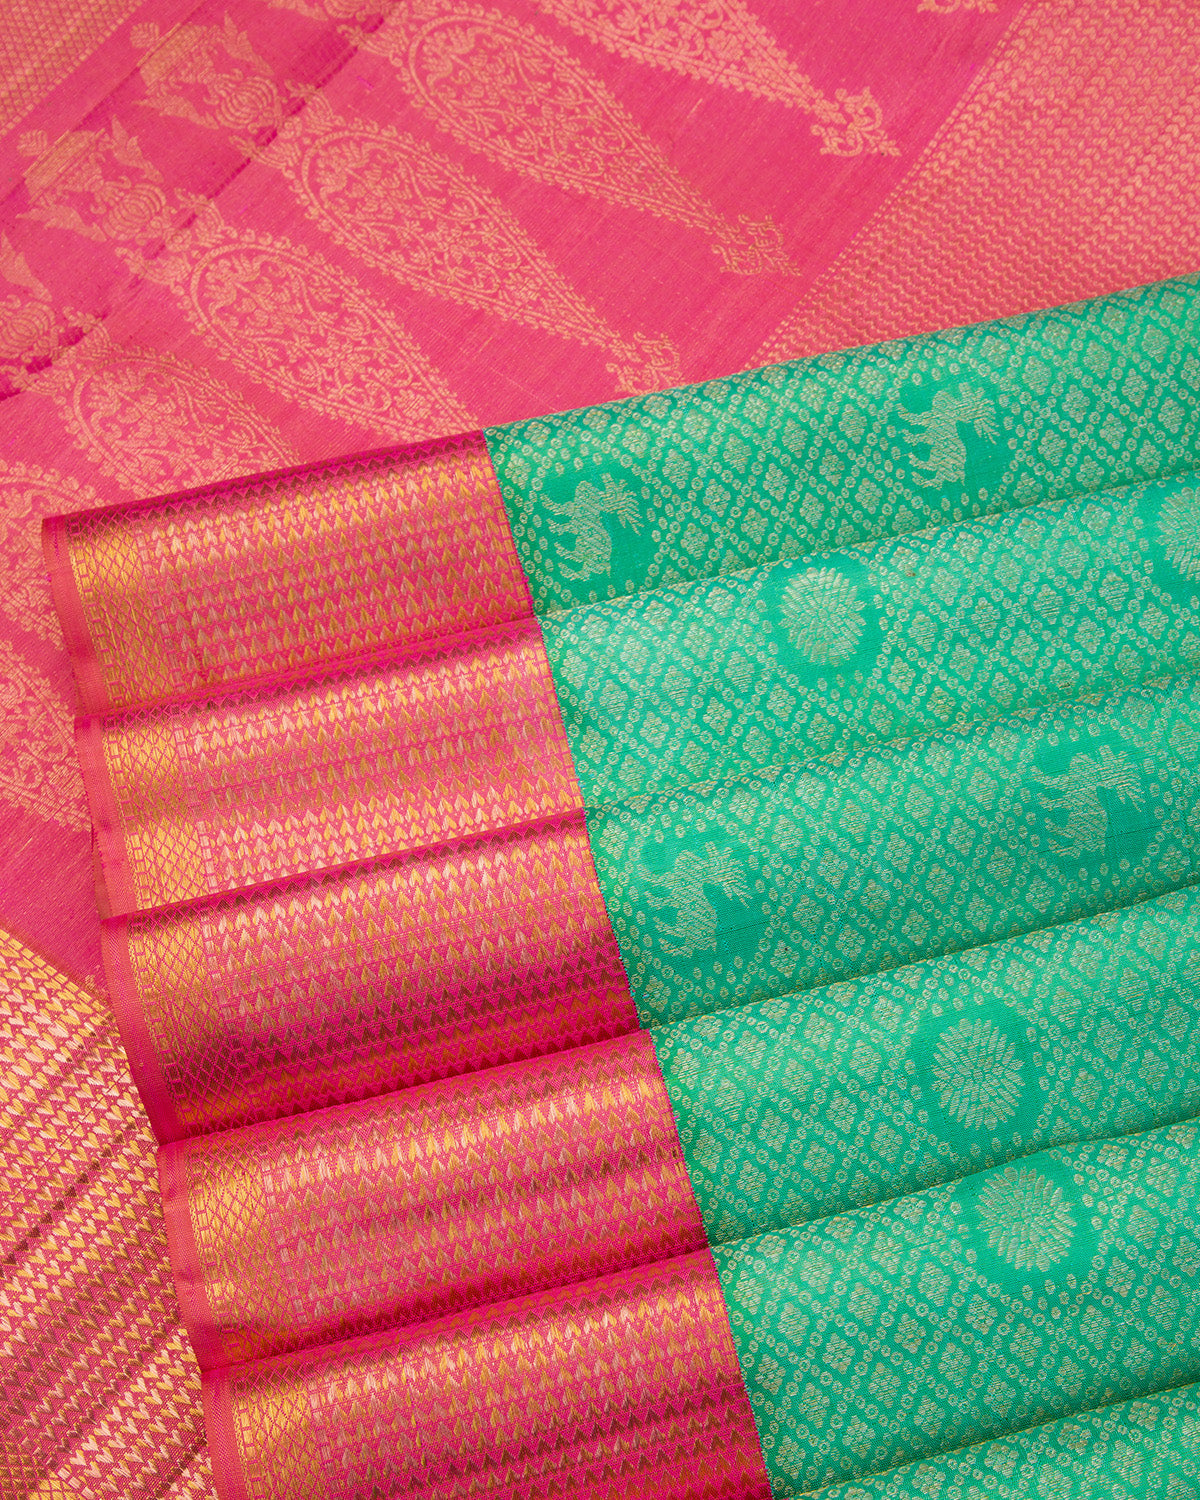 Mint Green and Flamingo Pink Kanjivaram Silk Saree - S608 - View 5